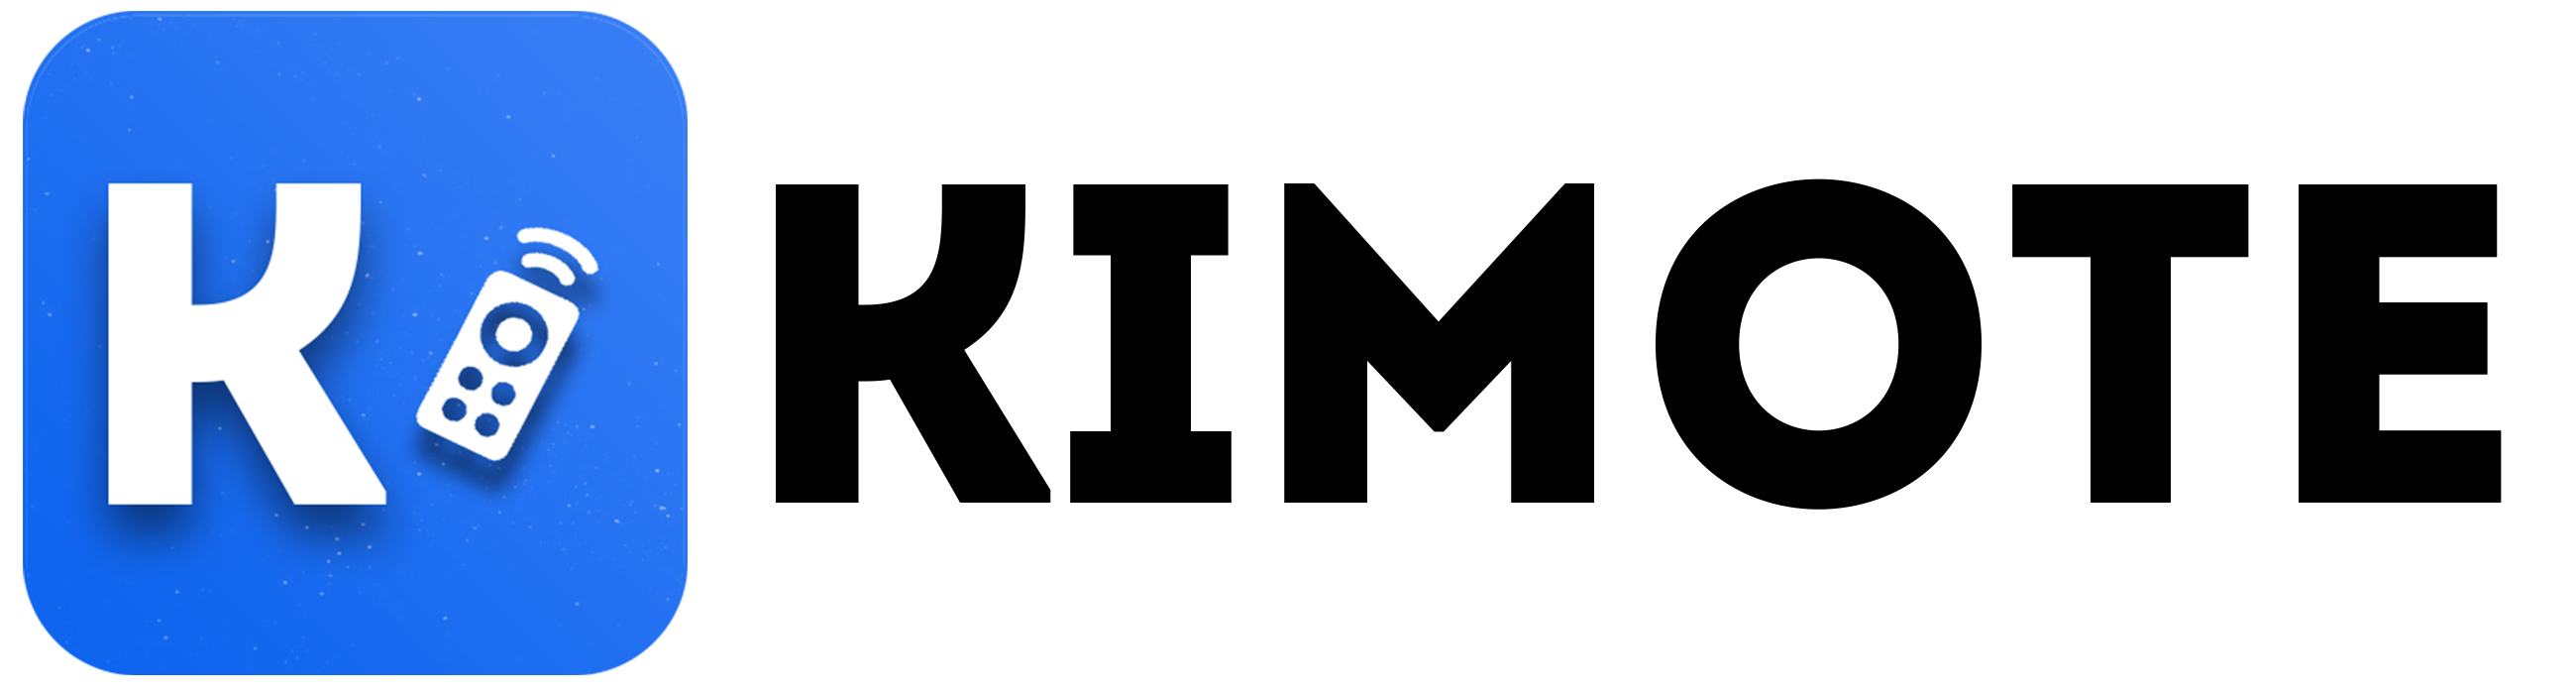 File:Kimote logo.png